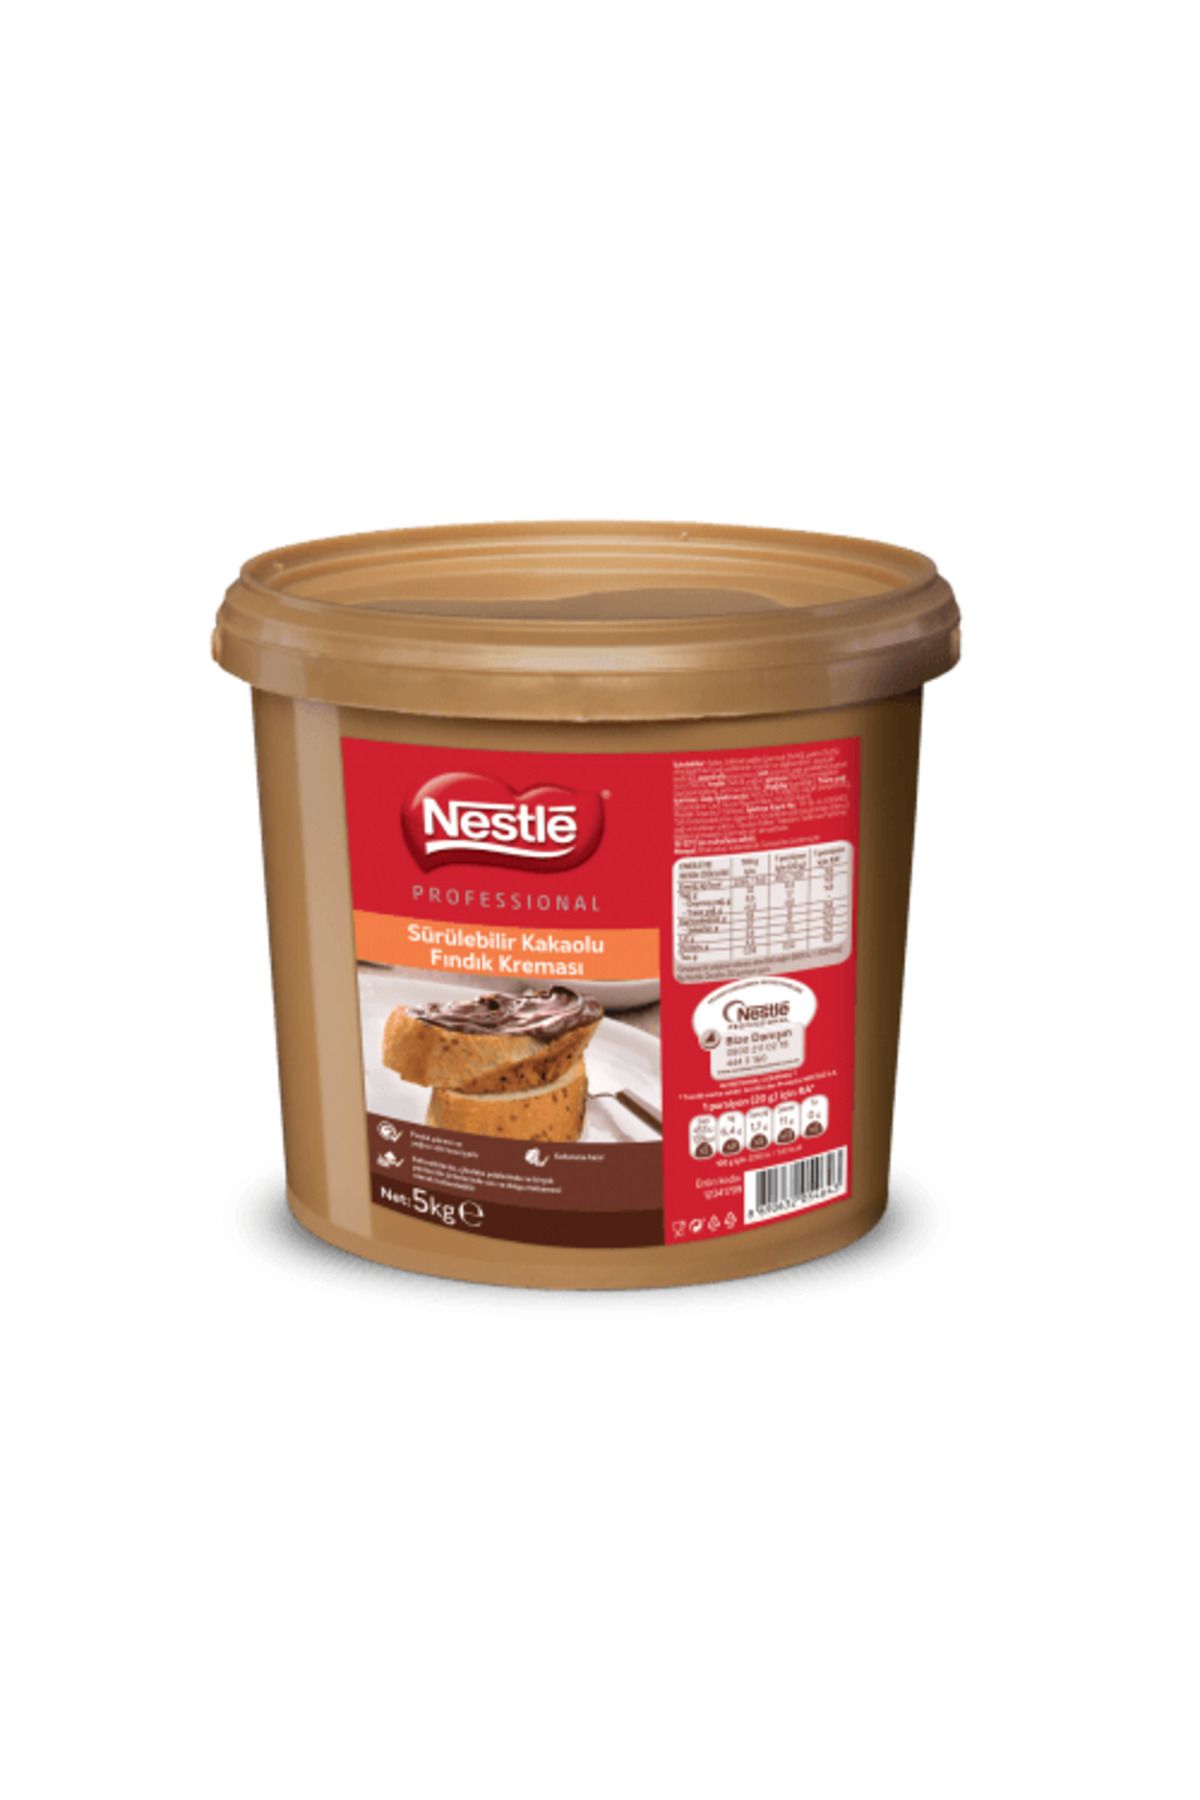 Nestle Professional Kakaolu Fındık Kreması 5kg